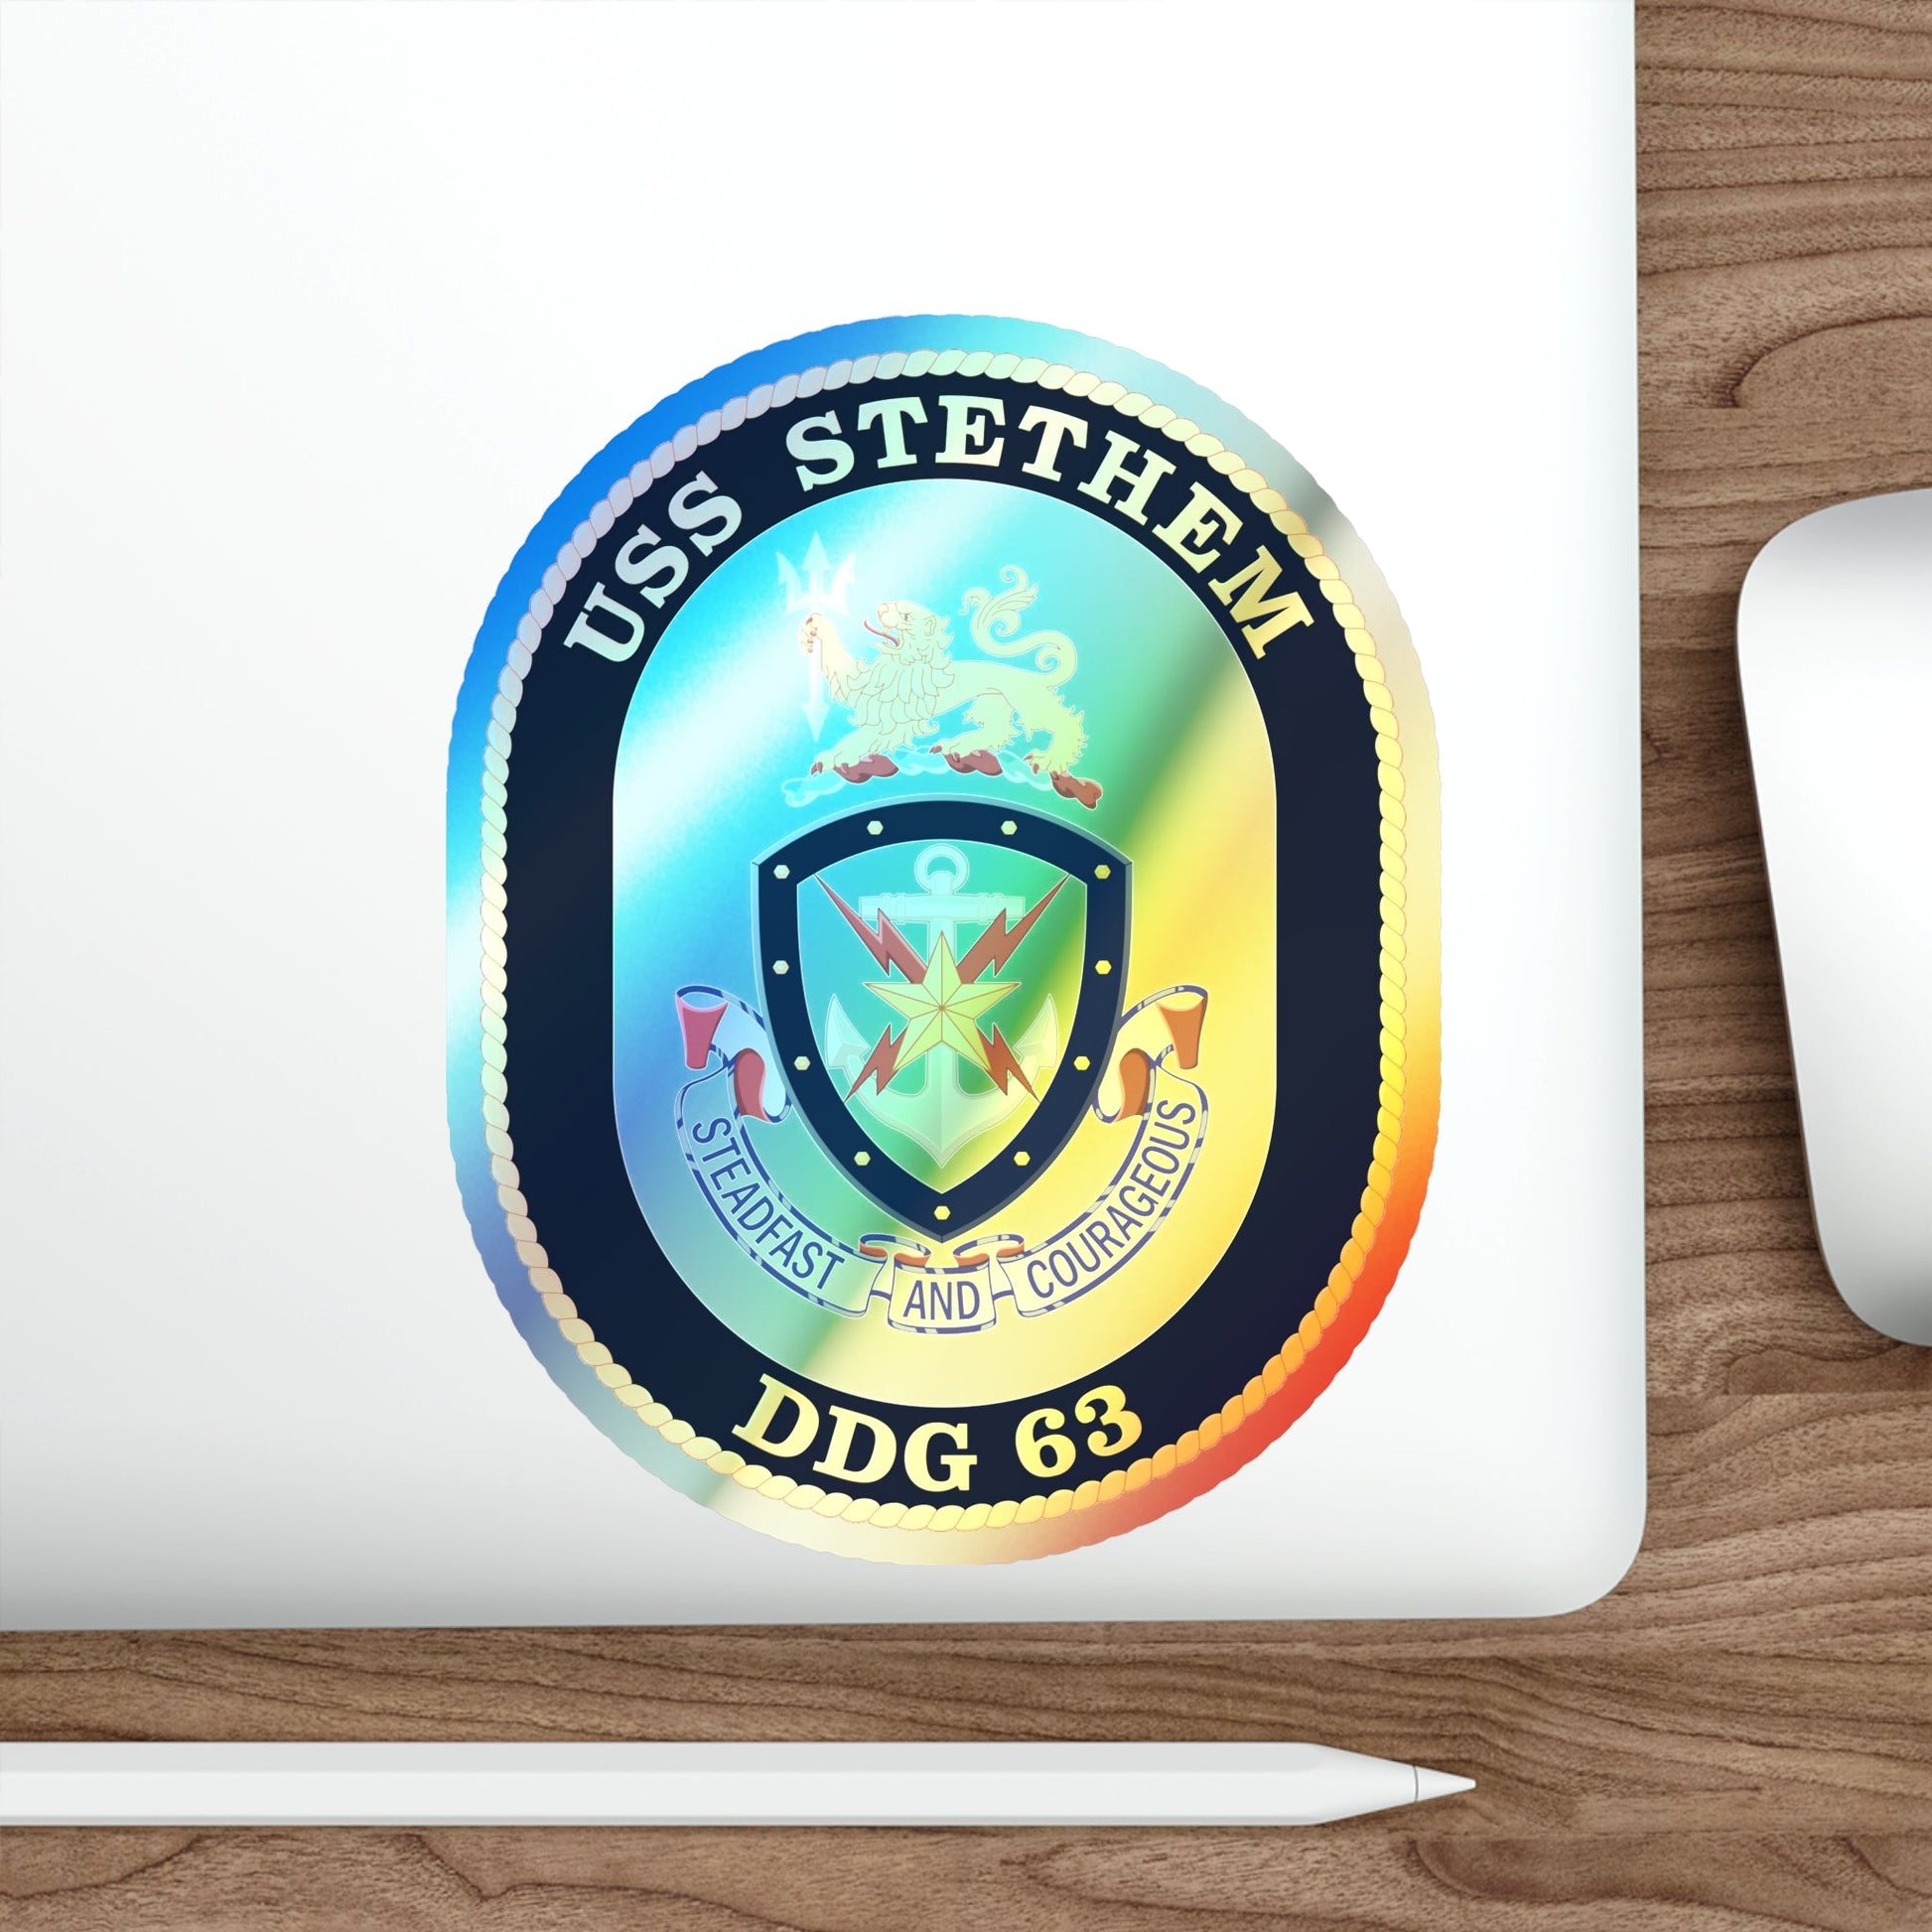 USS Stethem DDG 63 Crest (U.S. Navy) Holographic STICKER Die-Cut Vinyl Decal-The Sticker Space